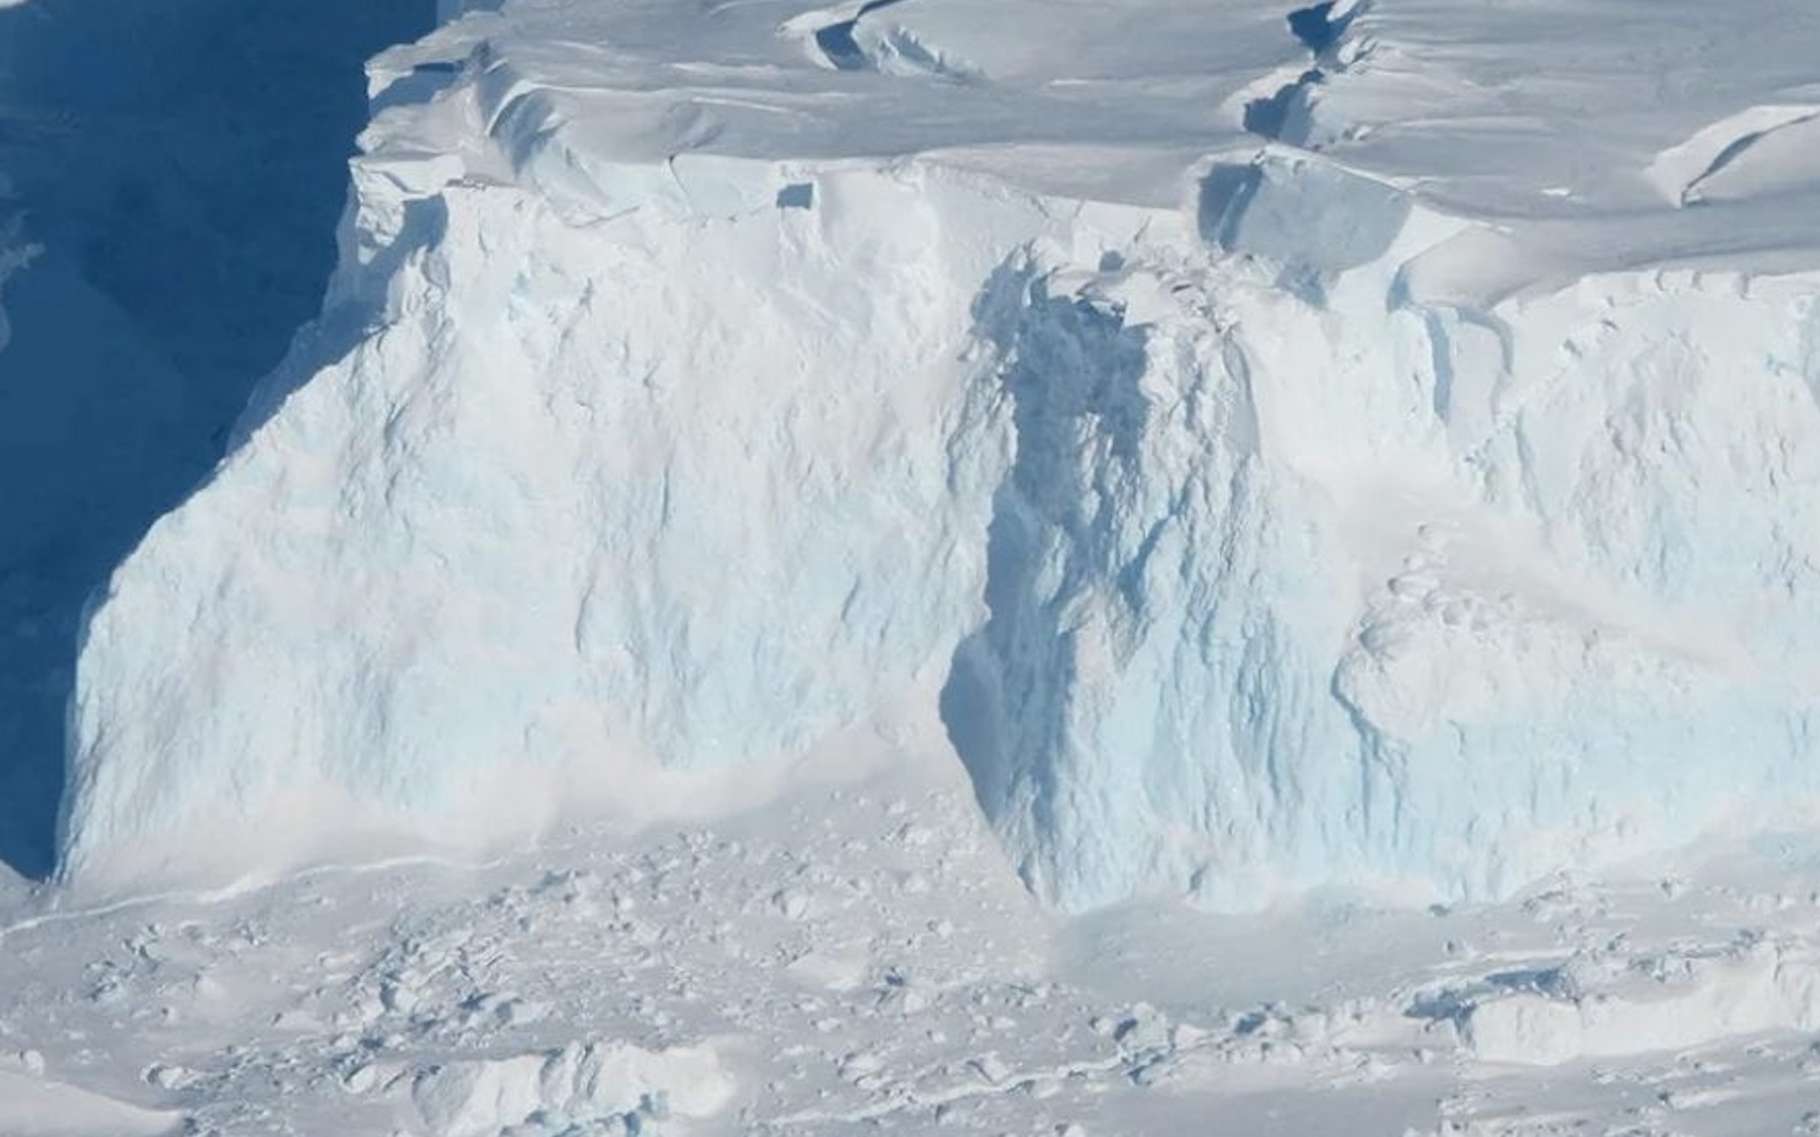 Le glacier de l'apocalypse est soumis à une fonte « vigoureuse » qui dépasse les prévisions des scientifiques